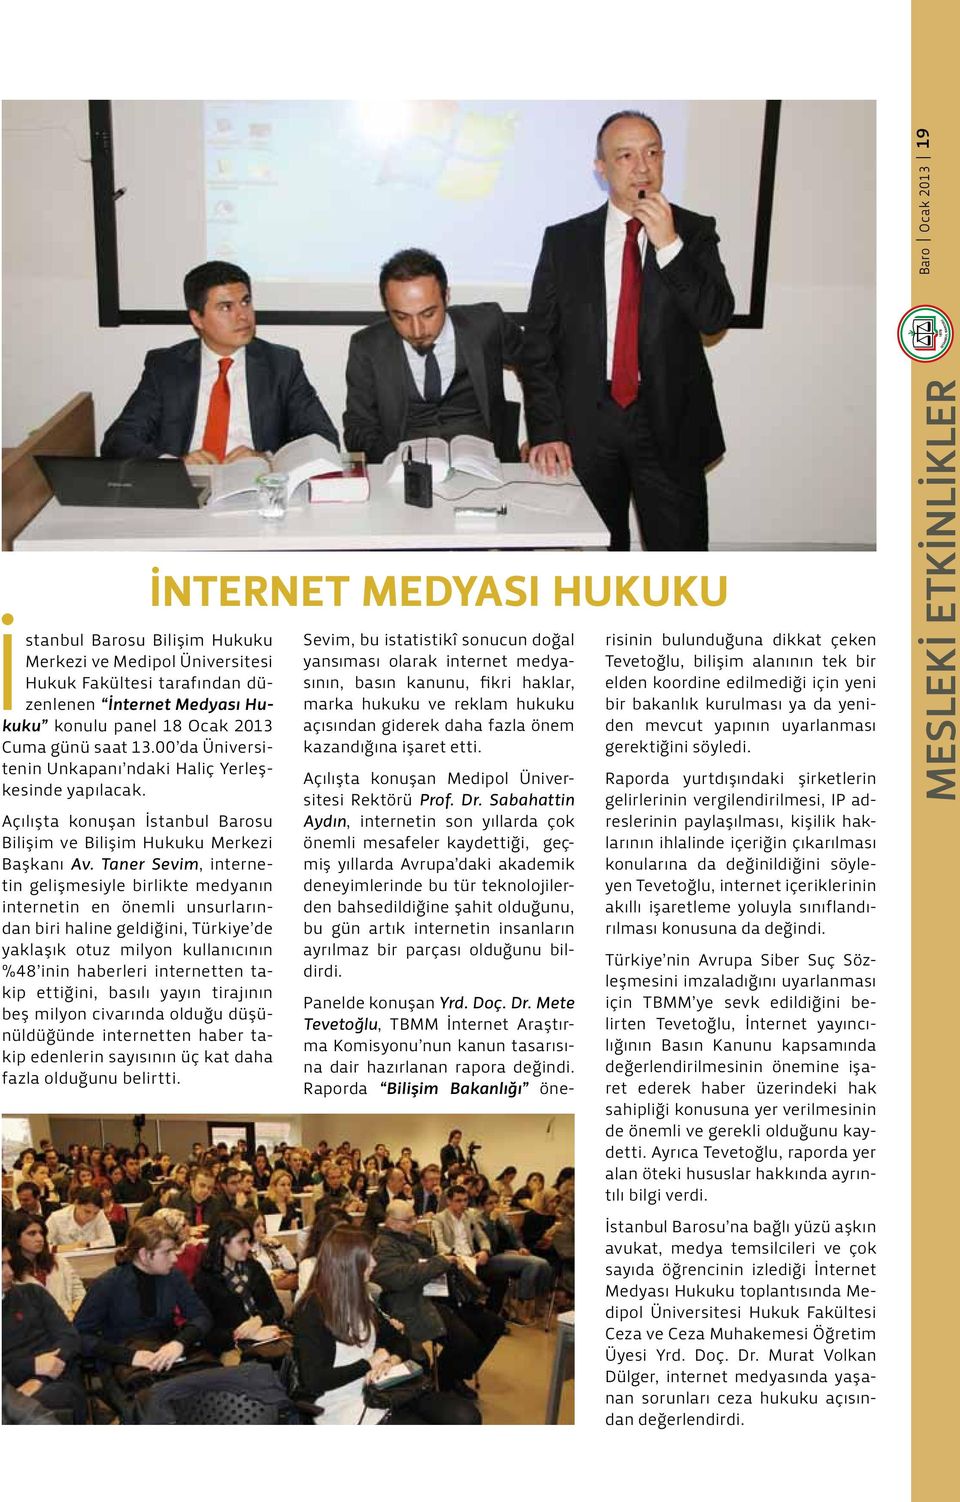 Taner Sevim, internetin gelişmesiyle birlikte medyanın internetin en önemli unsurlarından biri haline geldiğini, Türkiye de yaklaşık otuz milyon kullanıcının %48 inin haberleri internetten takip